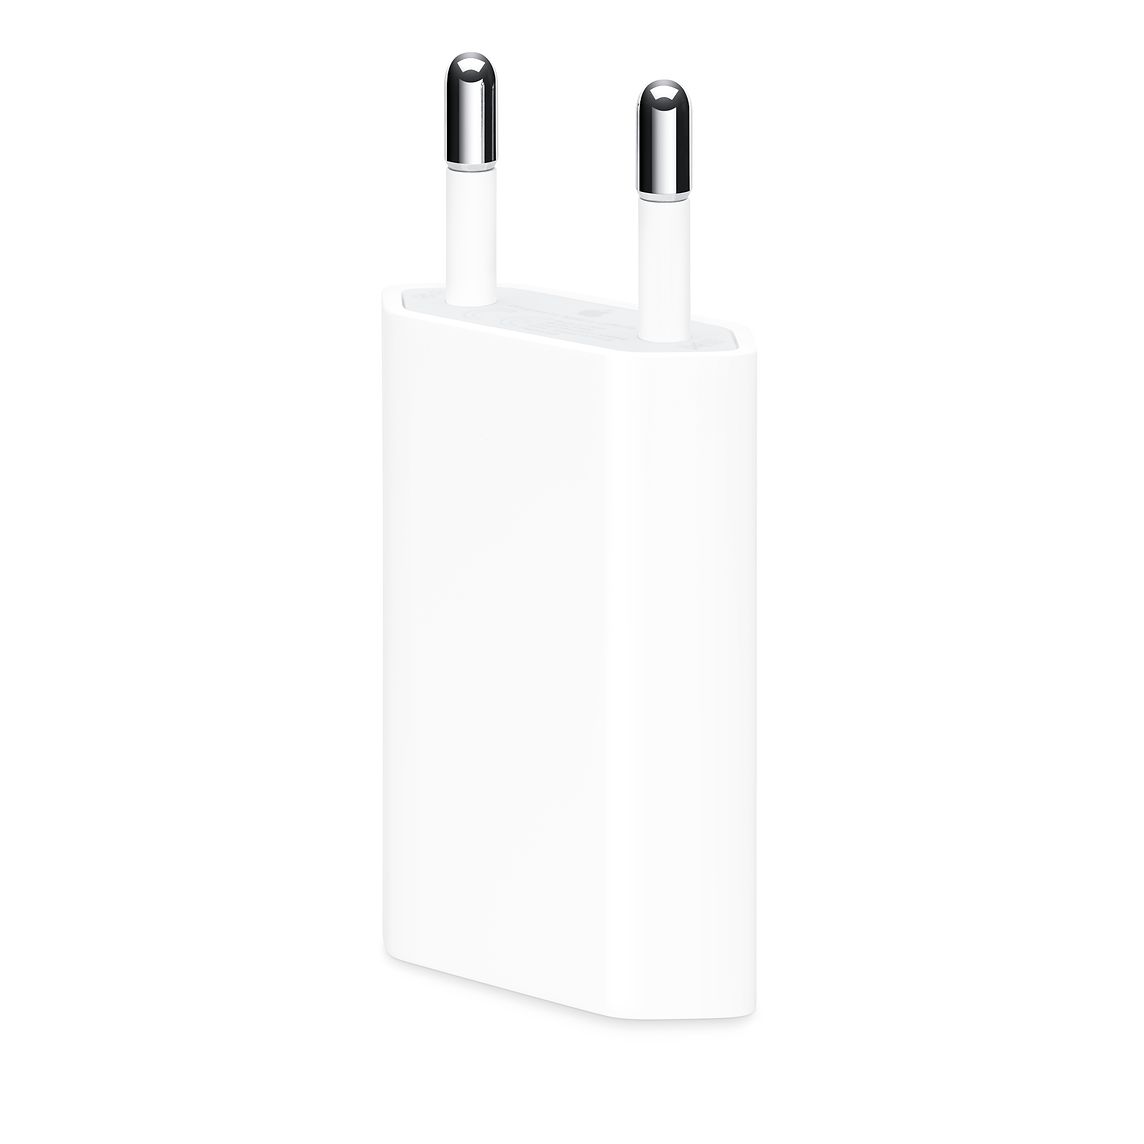 Адаптер питания Apple 5Вт USB Power Adapter